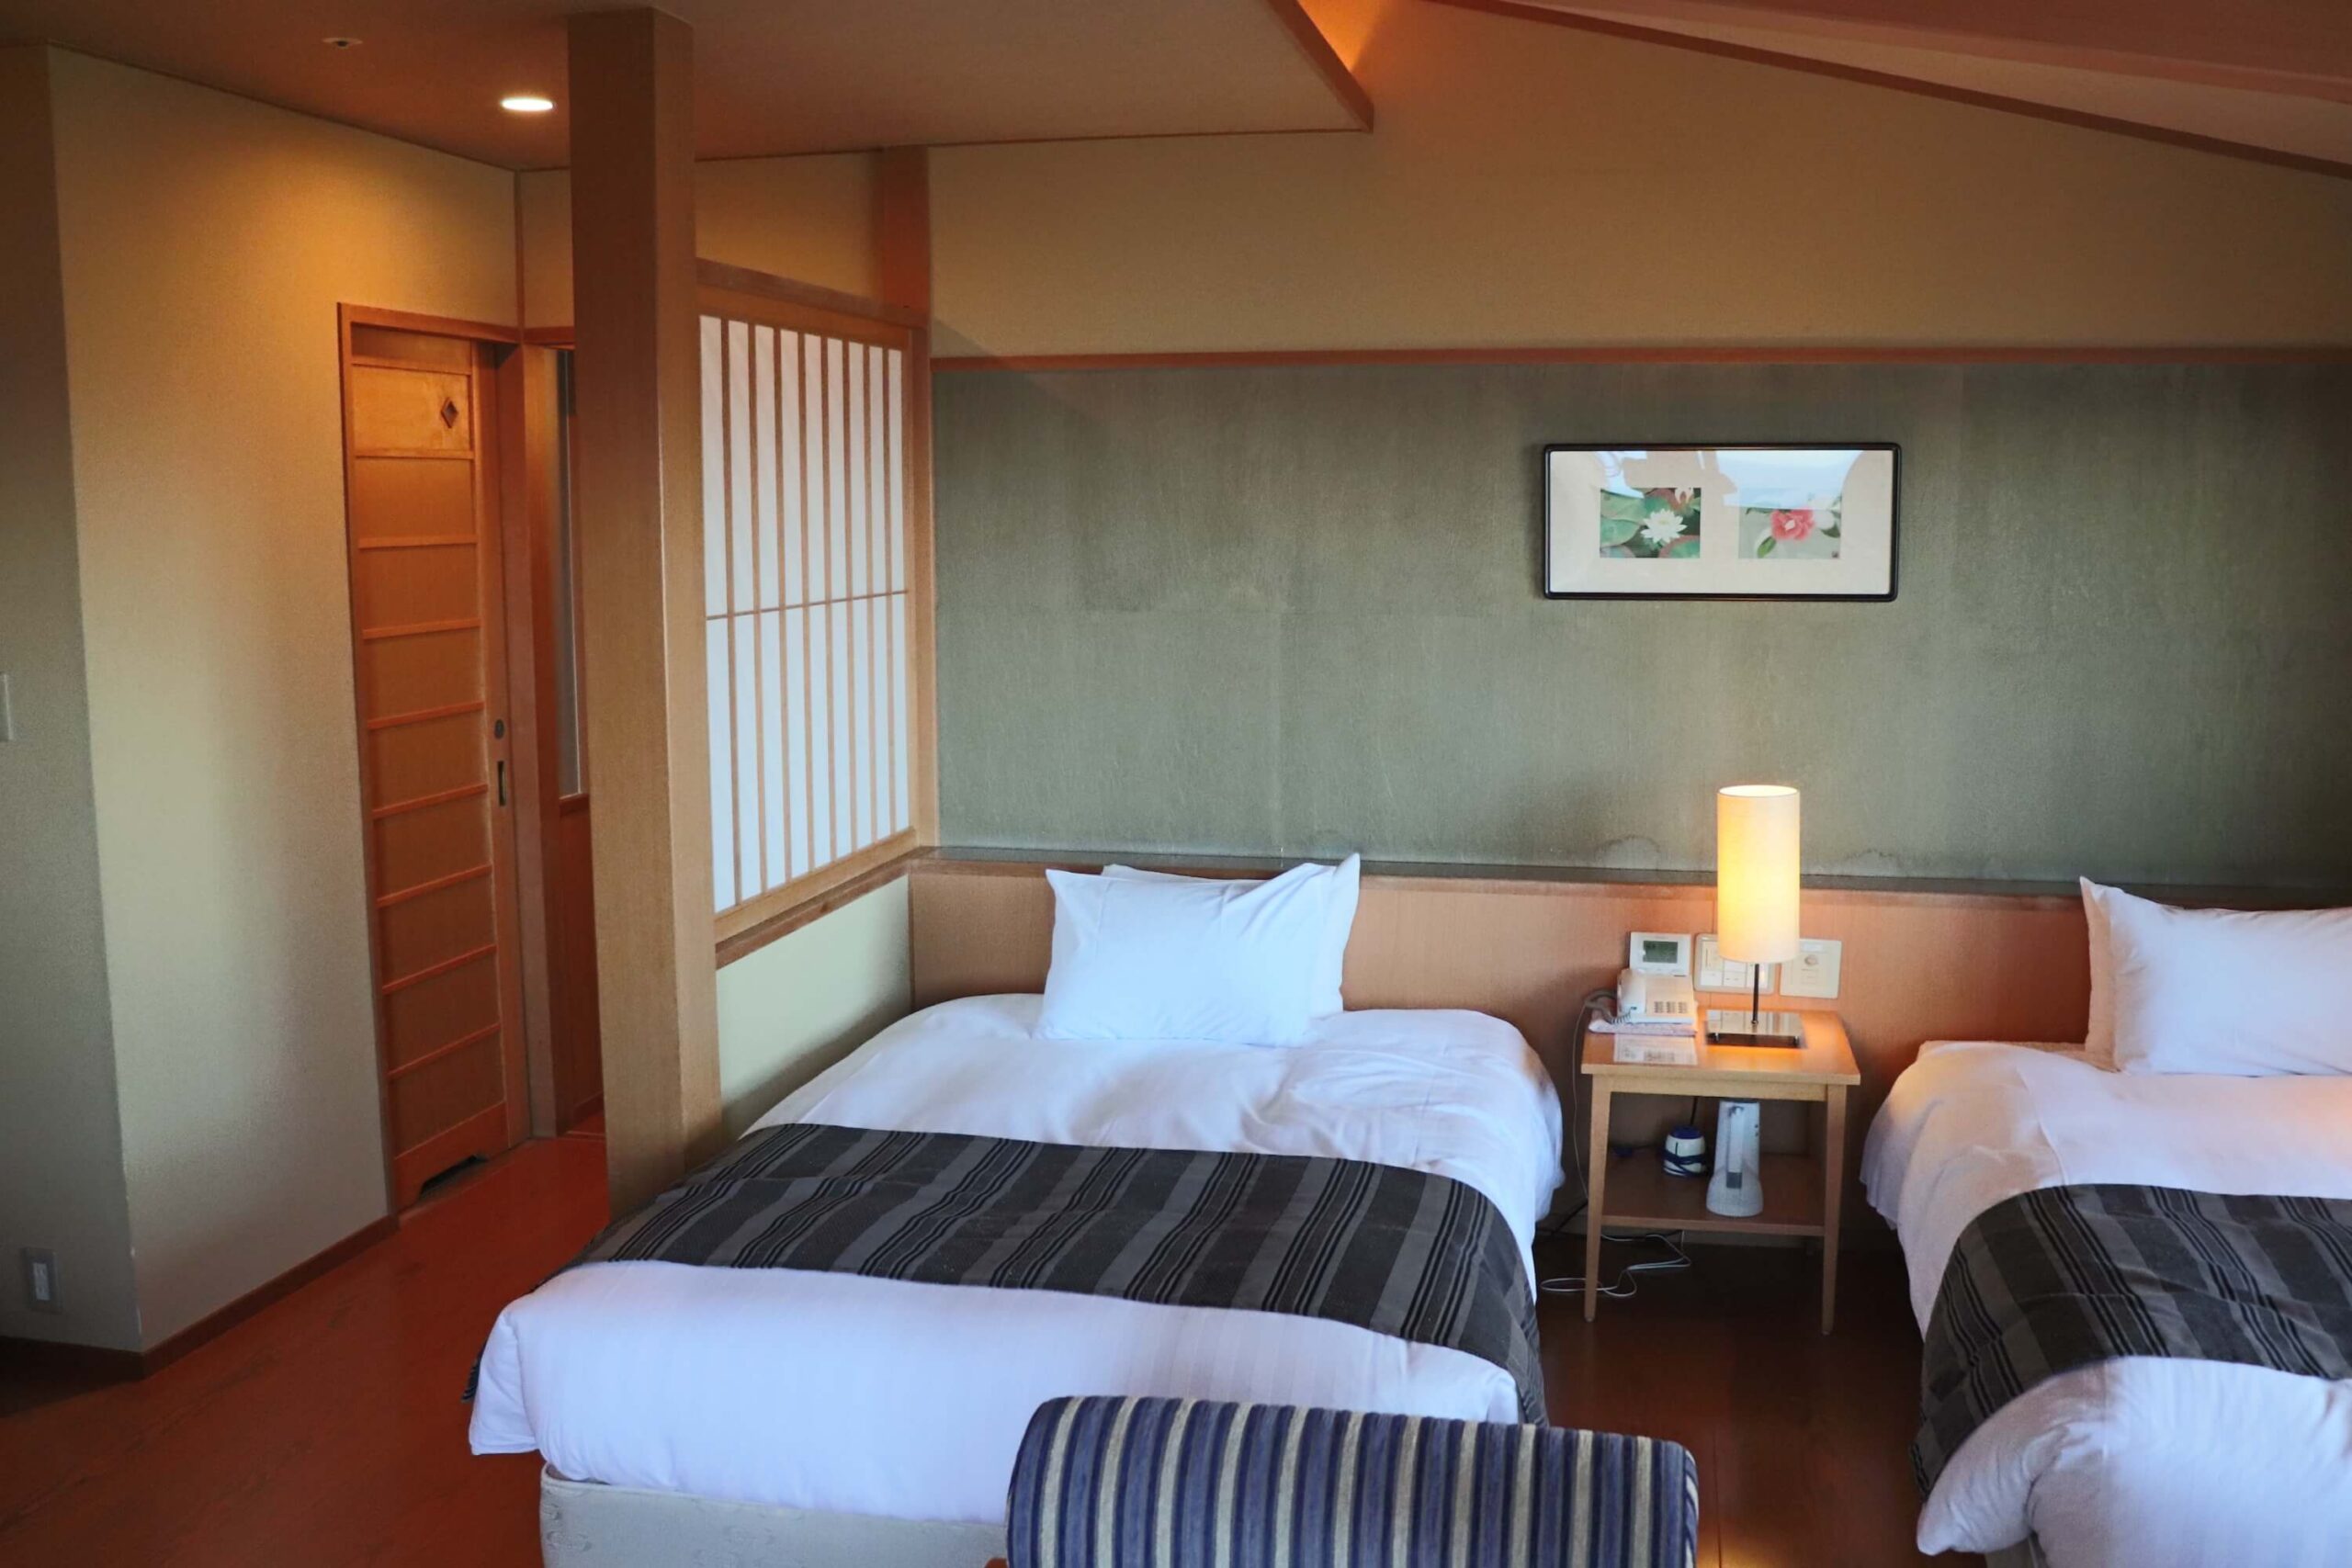 熱海の部屋食ができる高級旅館 大観荘の客室